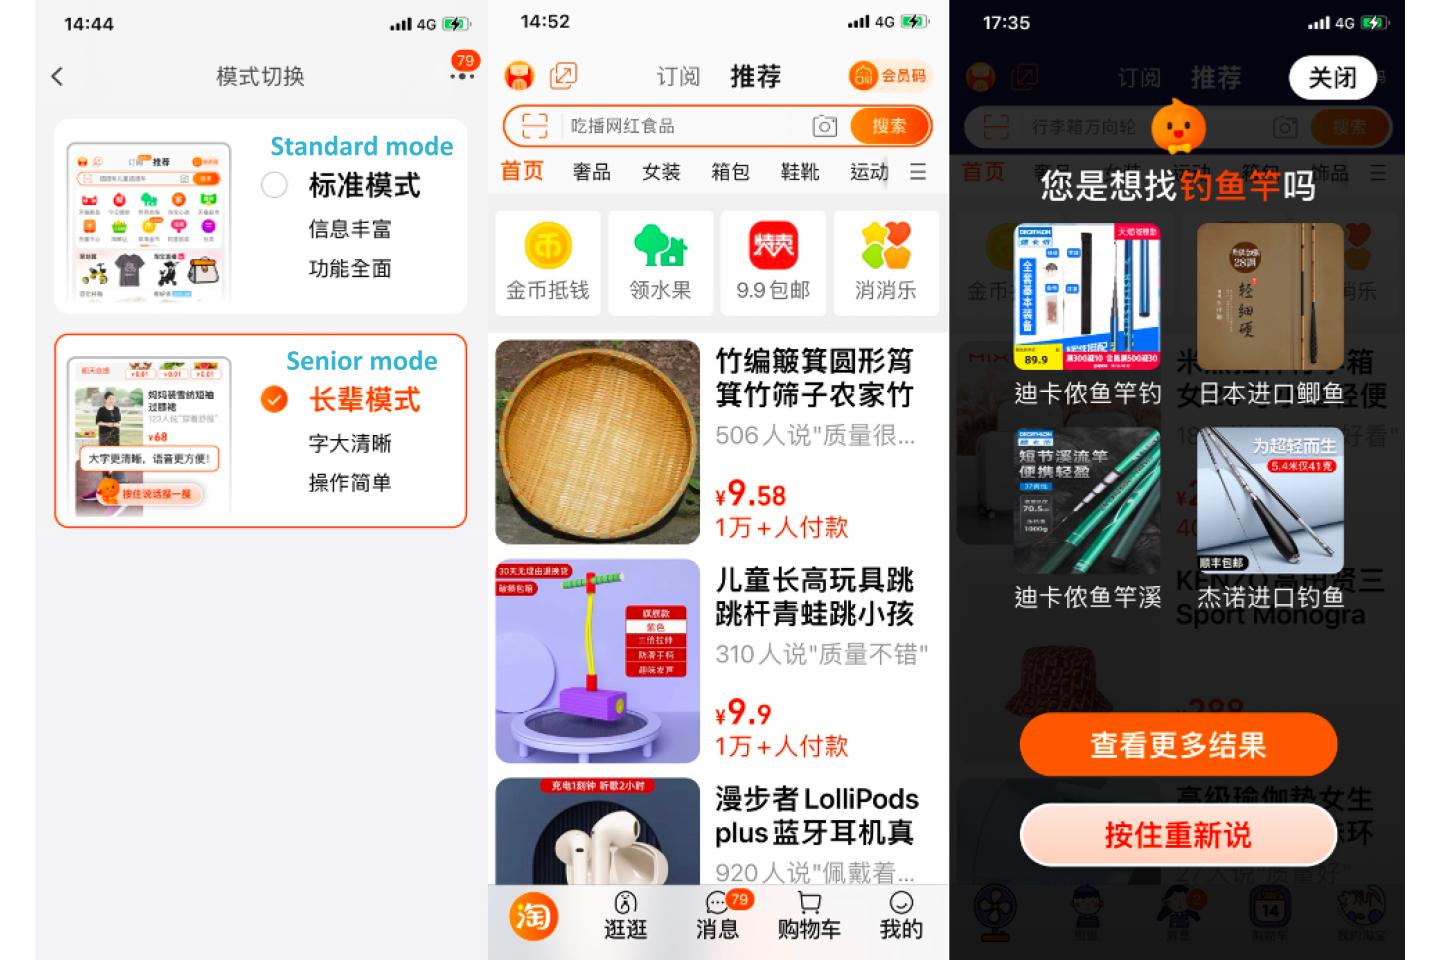 Taobao-Elderly-friendly-Version_image-2.pptx